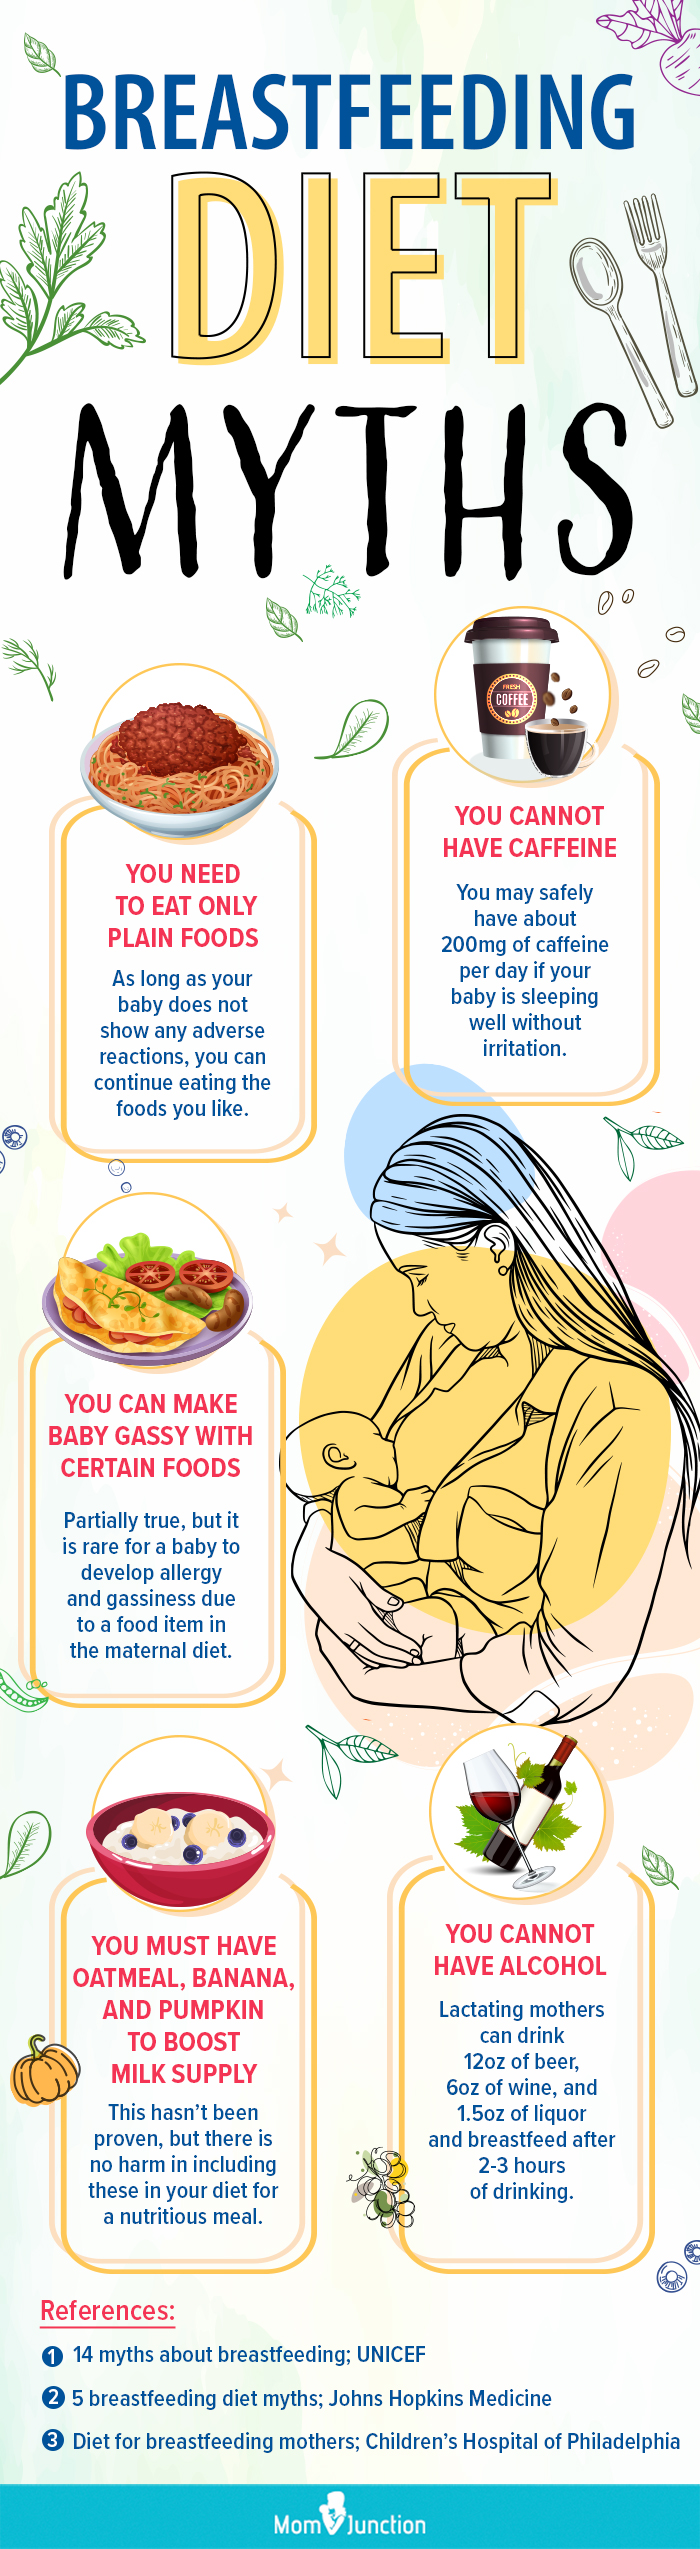 母乳喂养饮食误区(信息图)